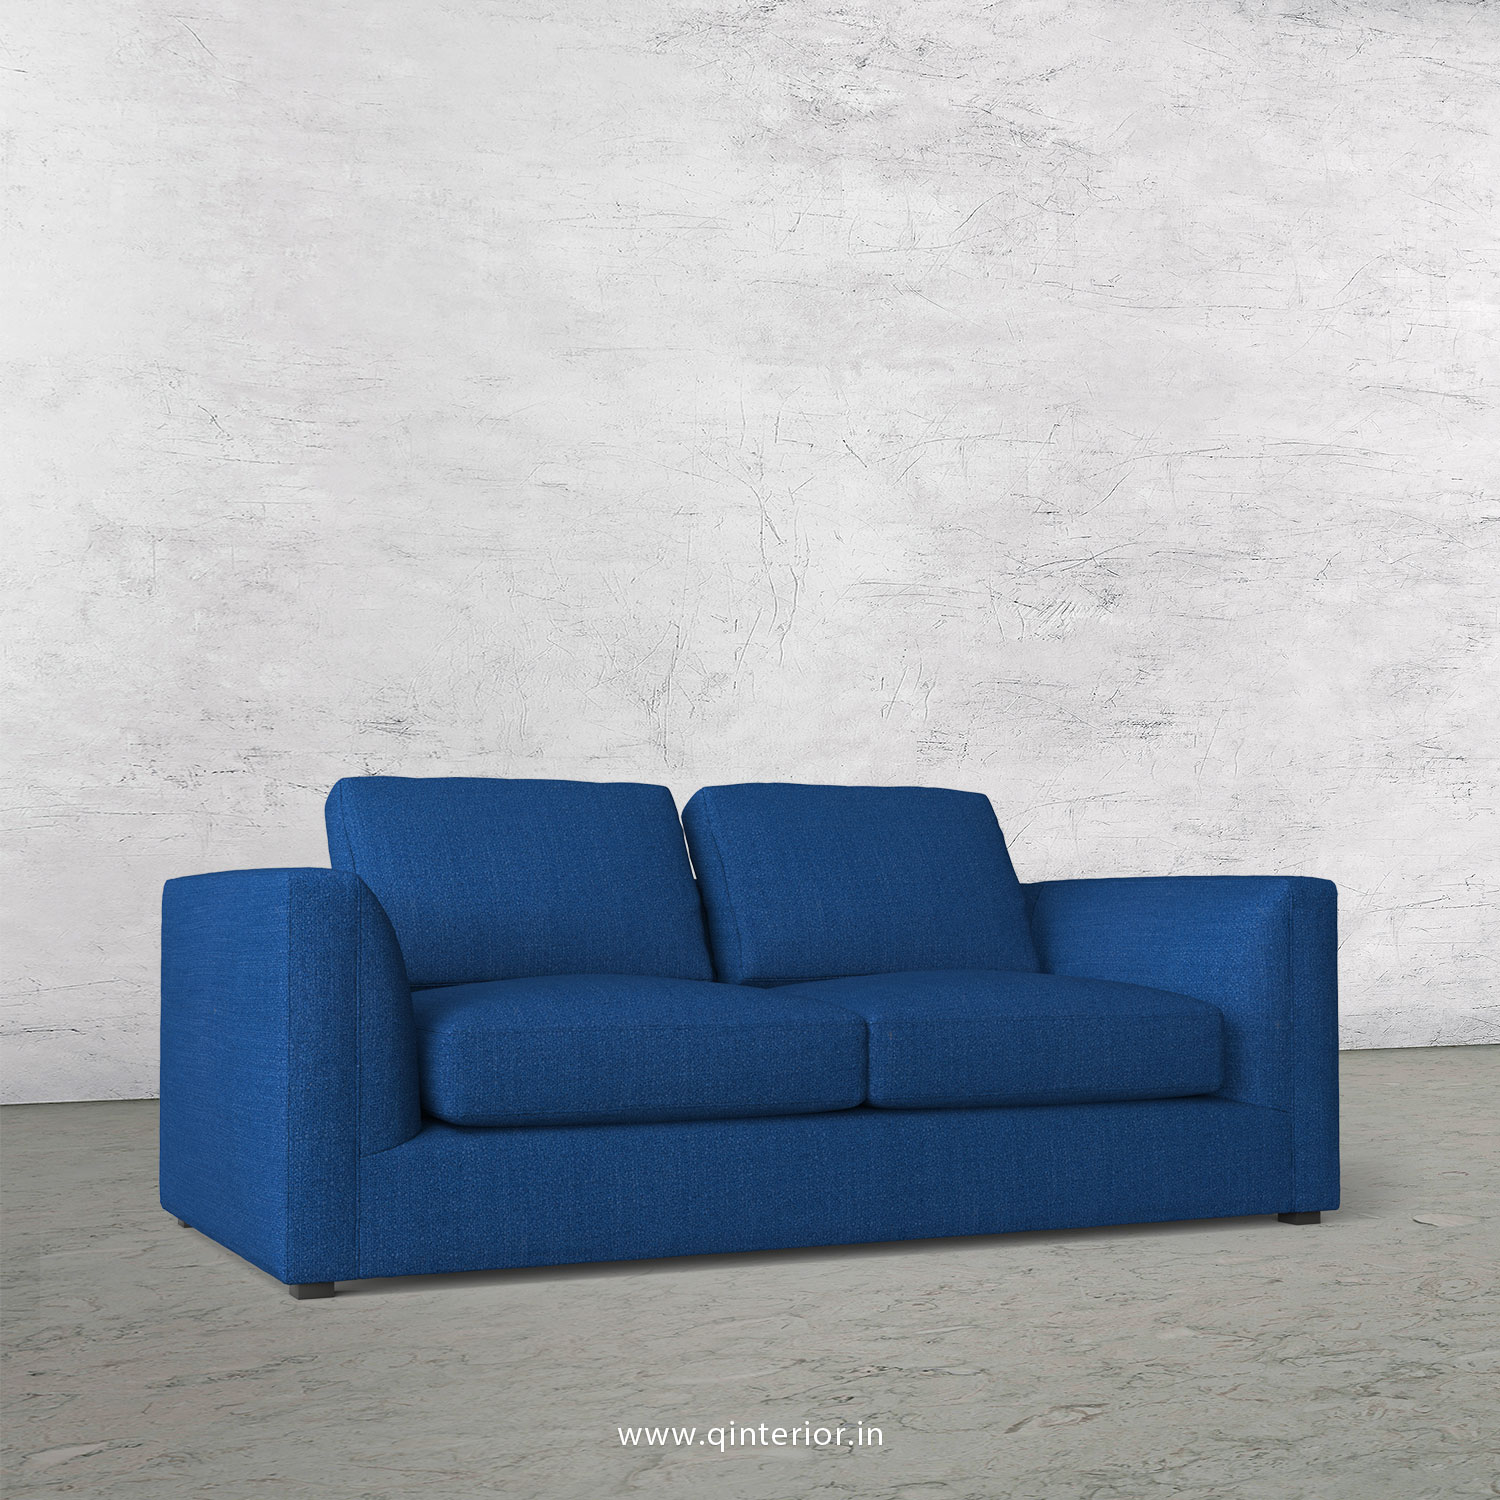 IRVINE 2 Seater Sofa in Bargello Fabric - SFA003 BG07